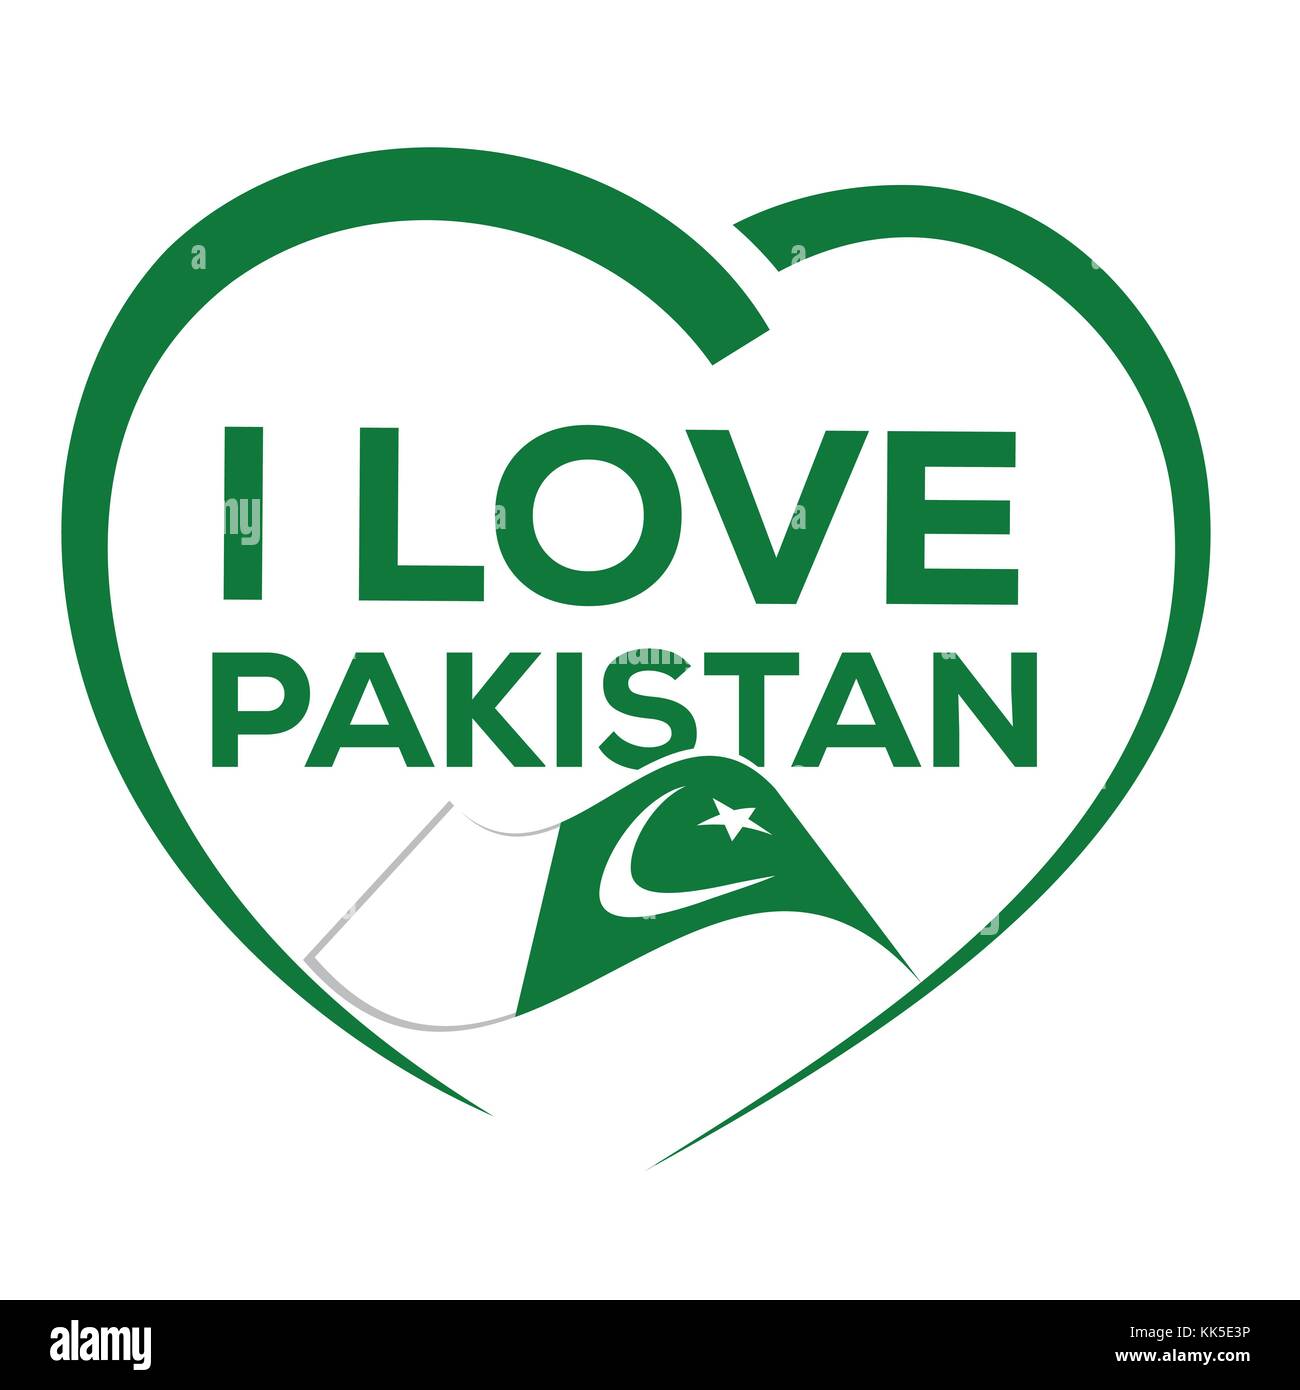 J'aime le Pakistan avec contours de cœur et d'un drapeau du Pakistan, de l'icône concevoir, isolé sur fond blanc. Illustration de Vecteur